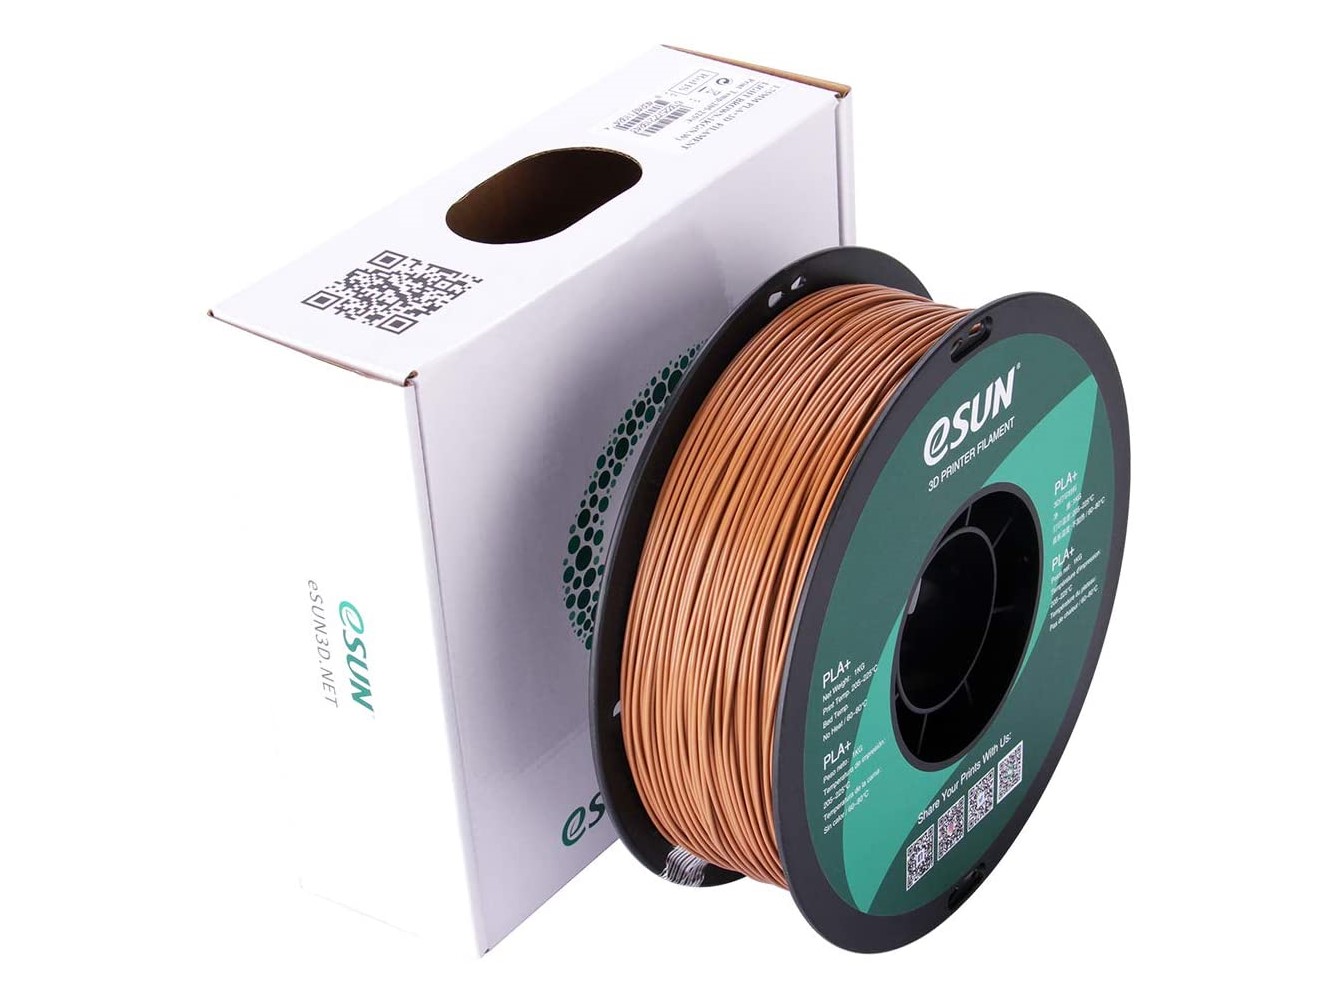 eSun eSilk PLA filament copper 1kg 